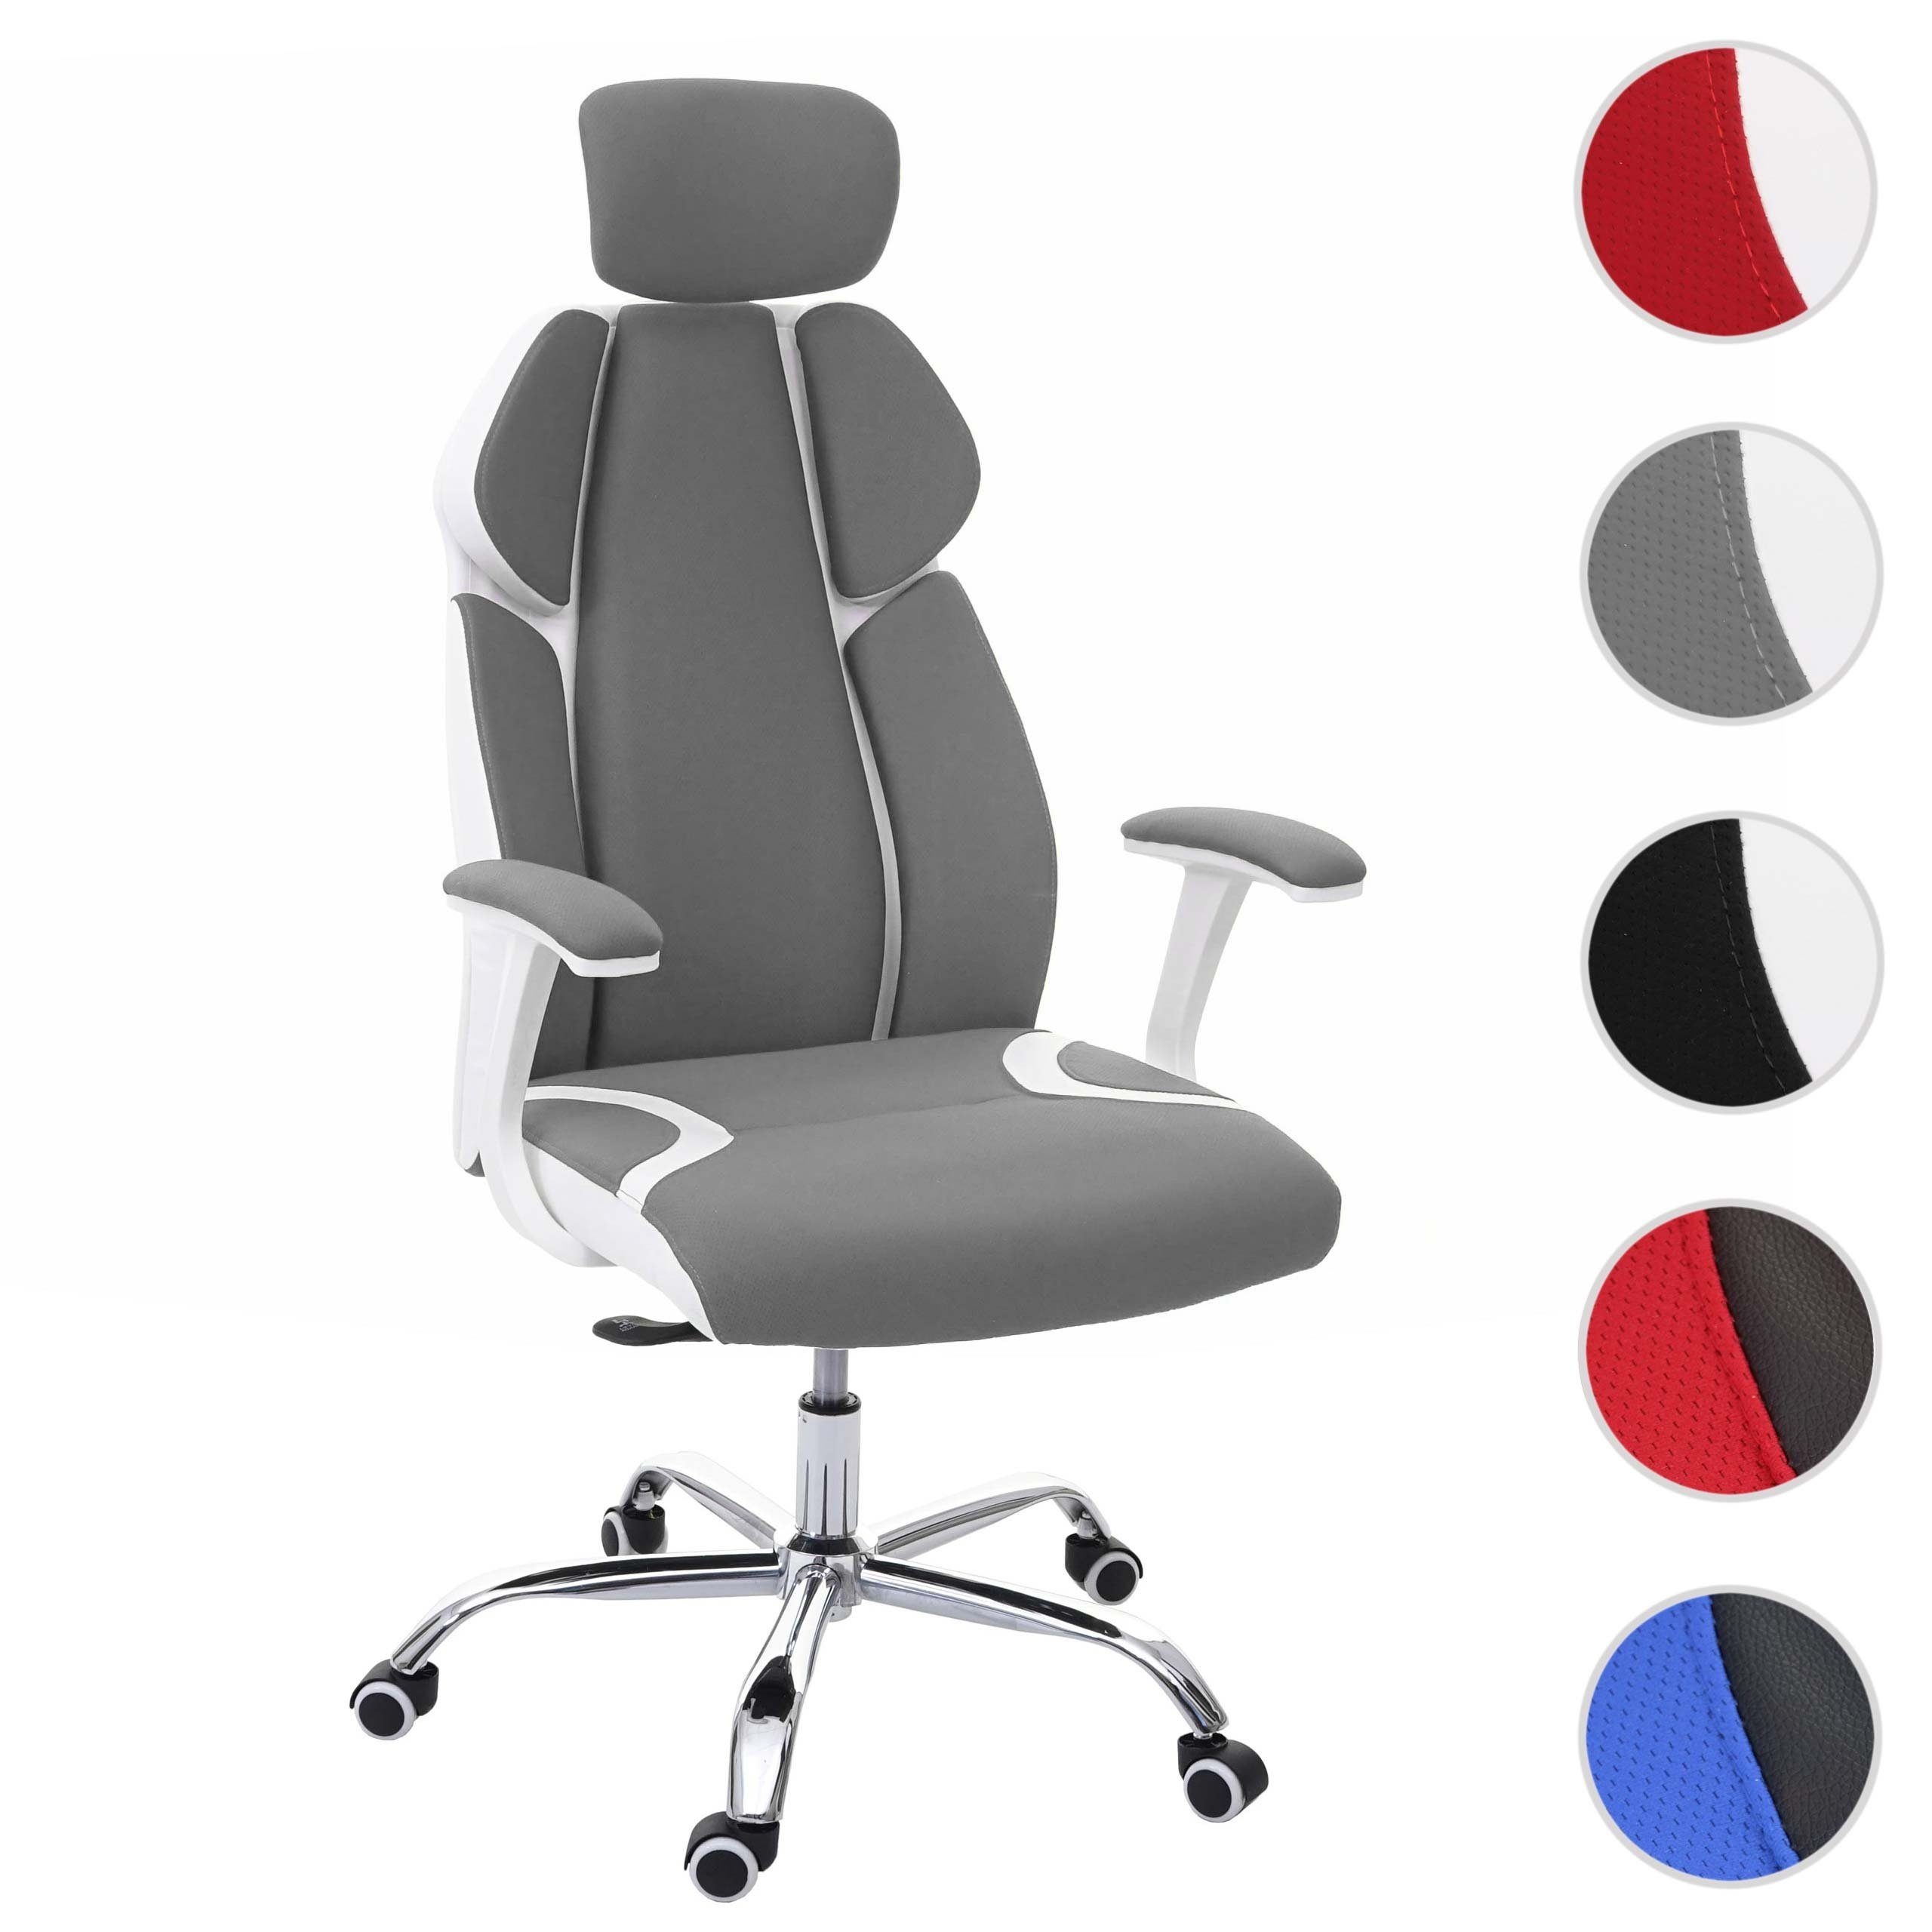 Kopfstütze, Sitz grau/weiß Höhenverstellbare Sliding-Funktion, MCW Schreibtischstuhl Wippfunktion arretierbar, MCW-F12, Sliding